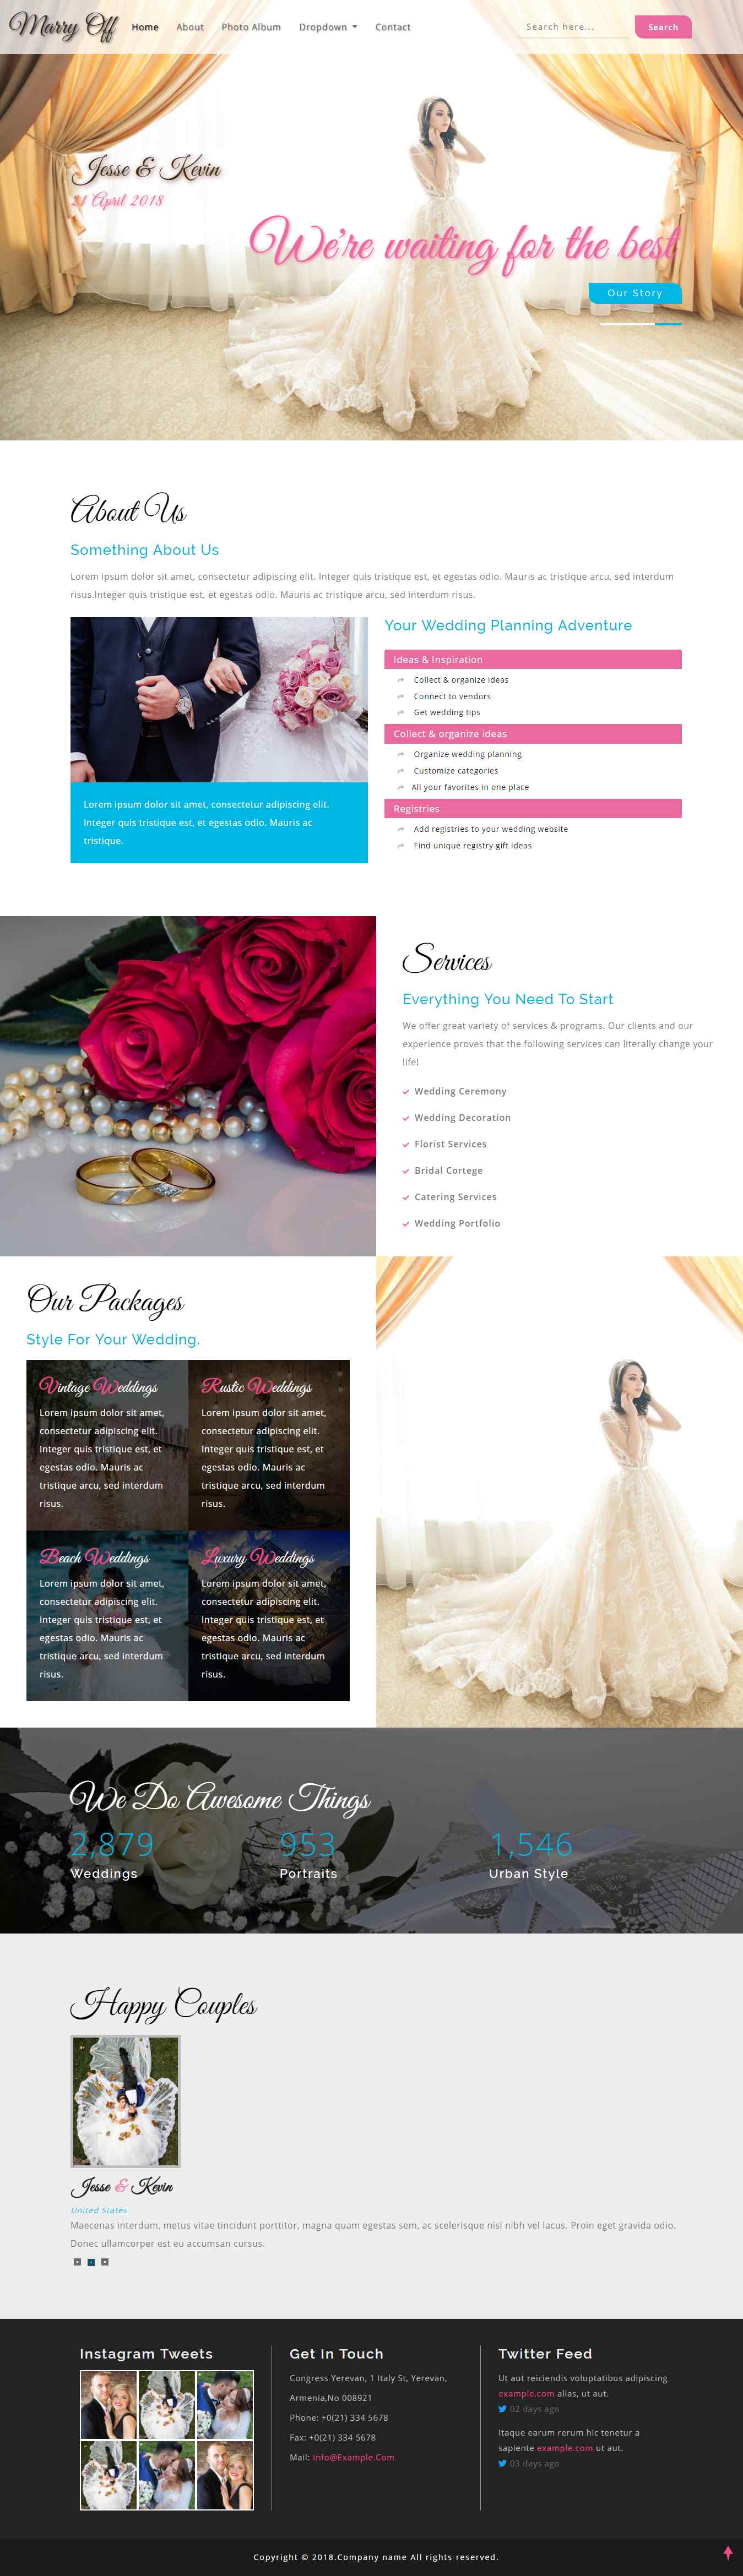 紫色宽屏风格的婚纱摄影企业网站源码下载